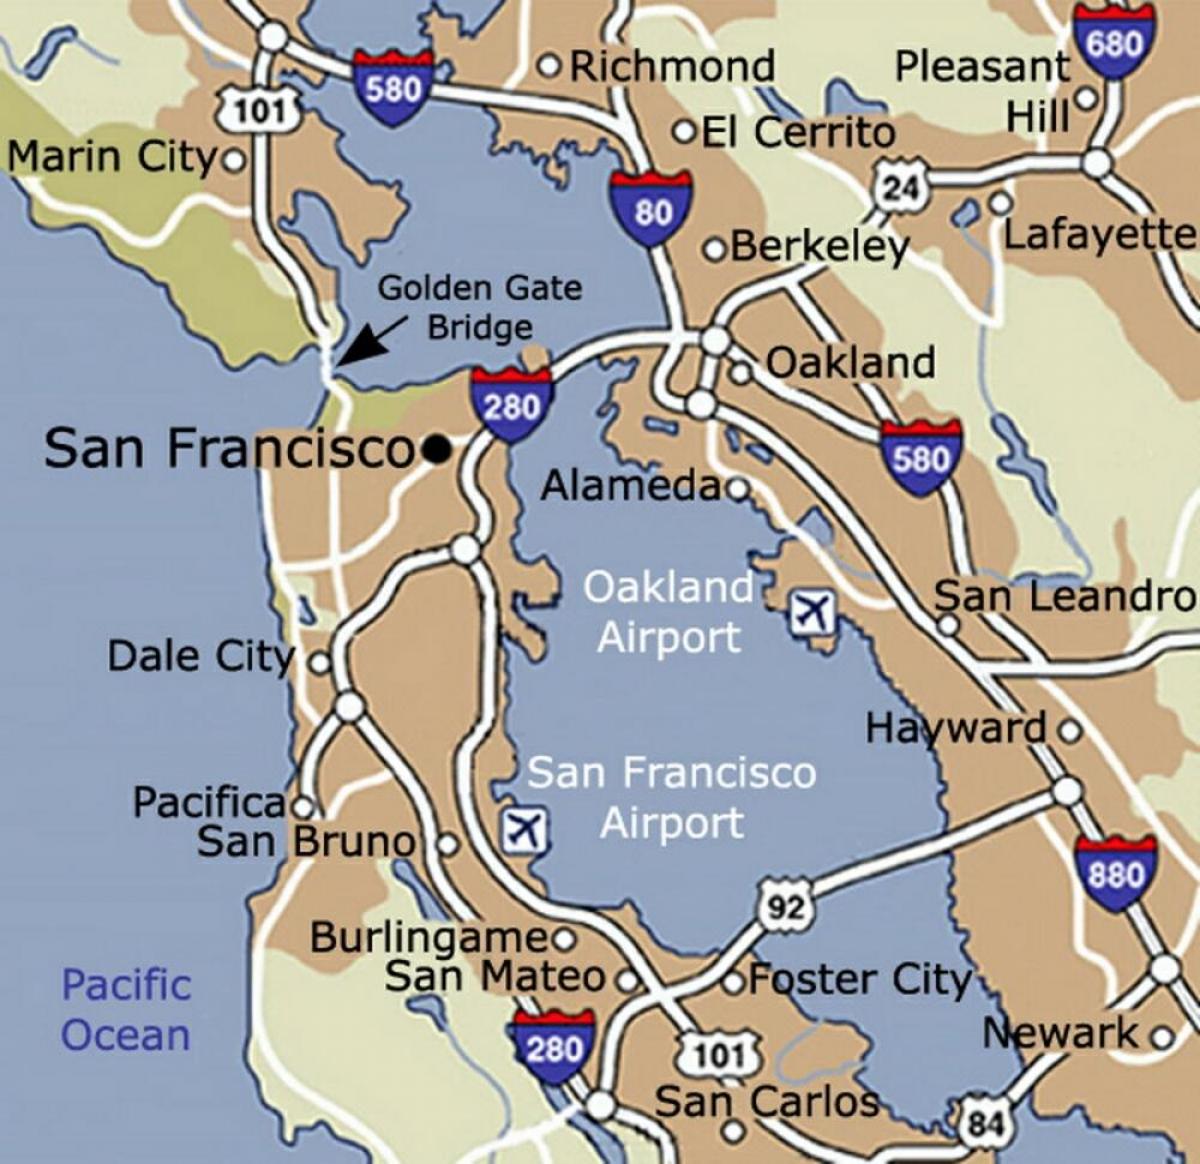 نقشہ سان فرانسسکو کے ہوائی اڈے اور ارد گرد کے علاقے